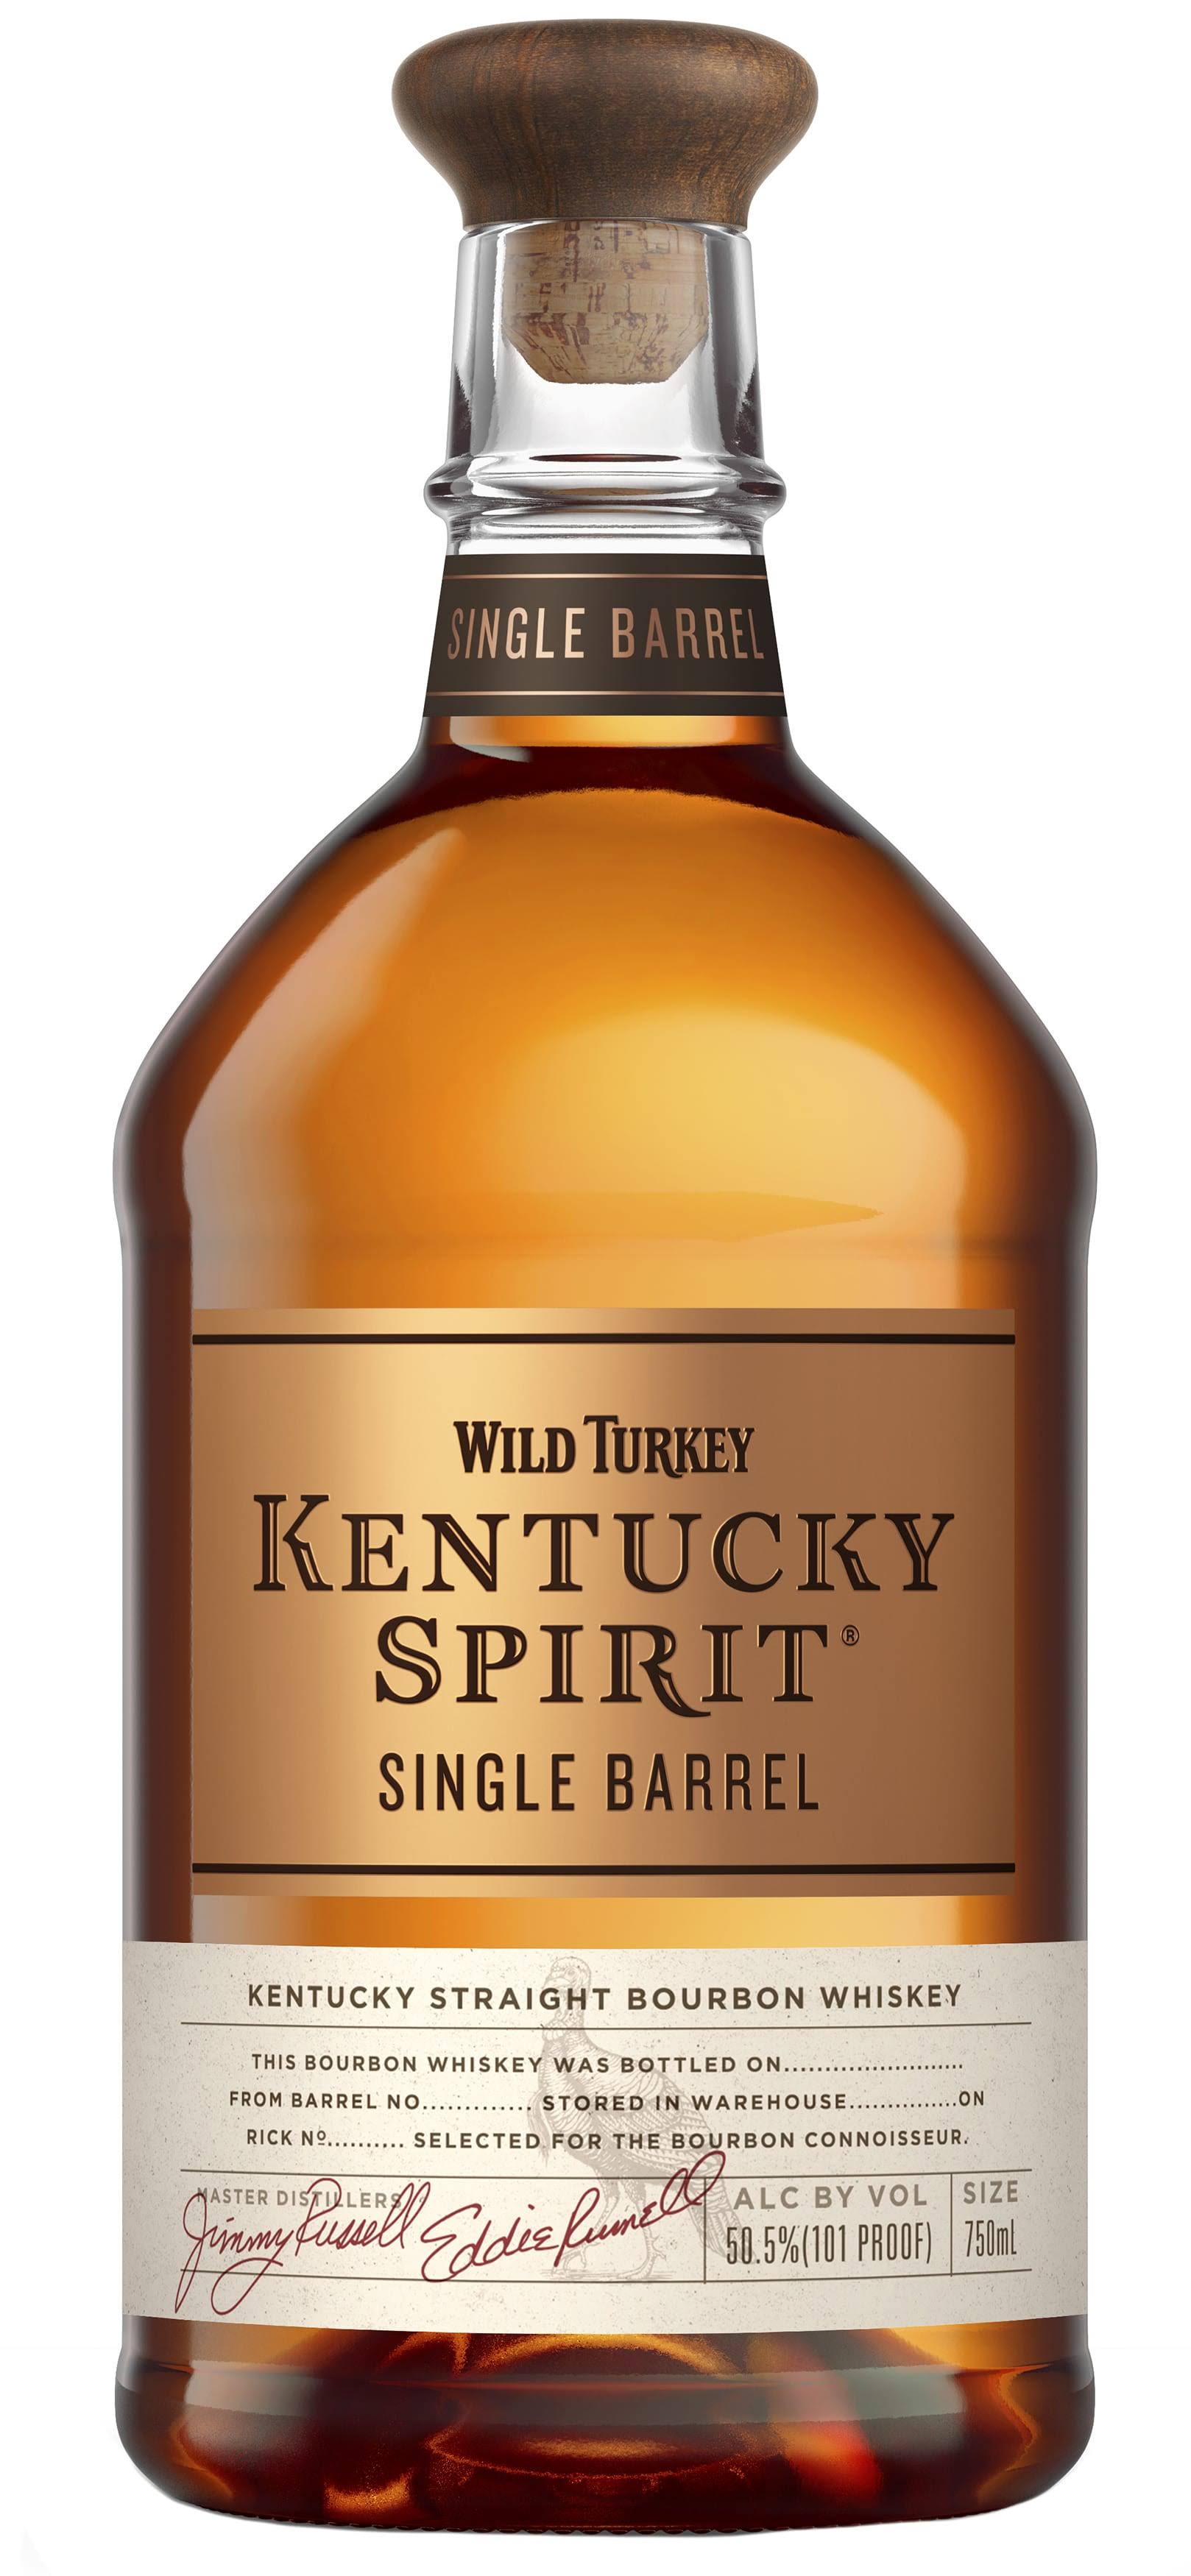 Wild Turkey Kentucky Spirit Bourbon - 750 ml bottle